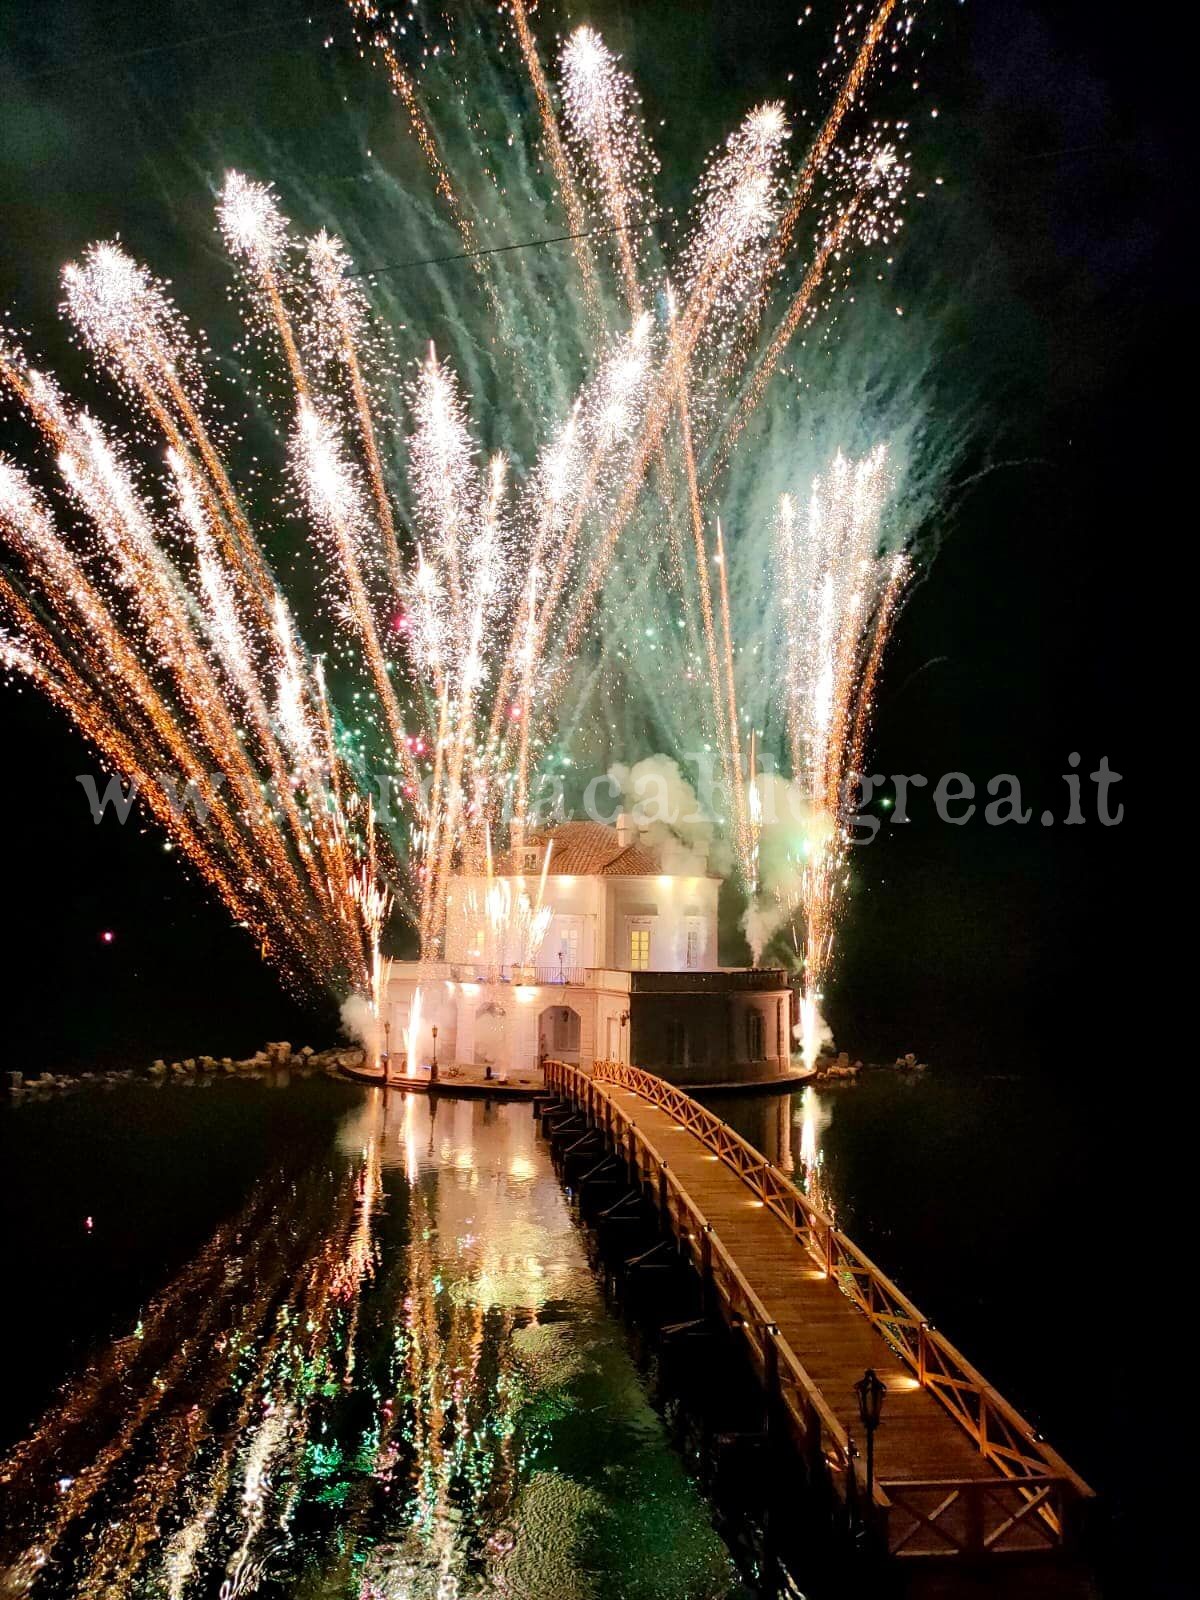 Spettacoli, stand e fuochi d’artificio: oltre 1000 persone al taglio del nastro del ponte della Casina Vanvitelliana